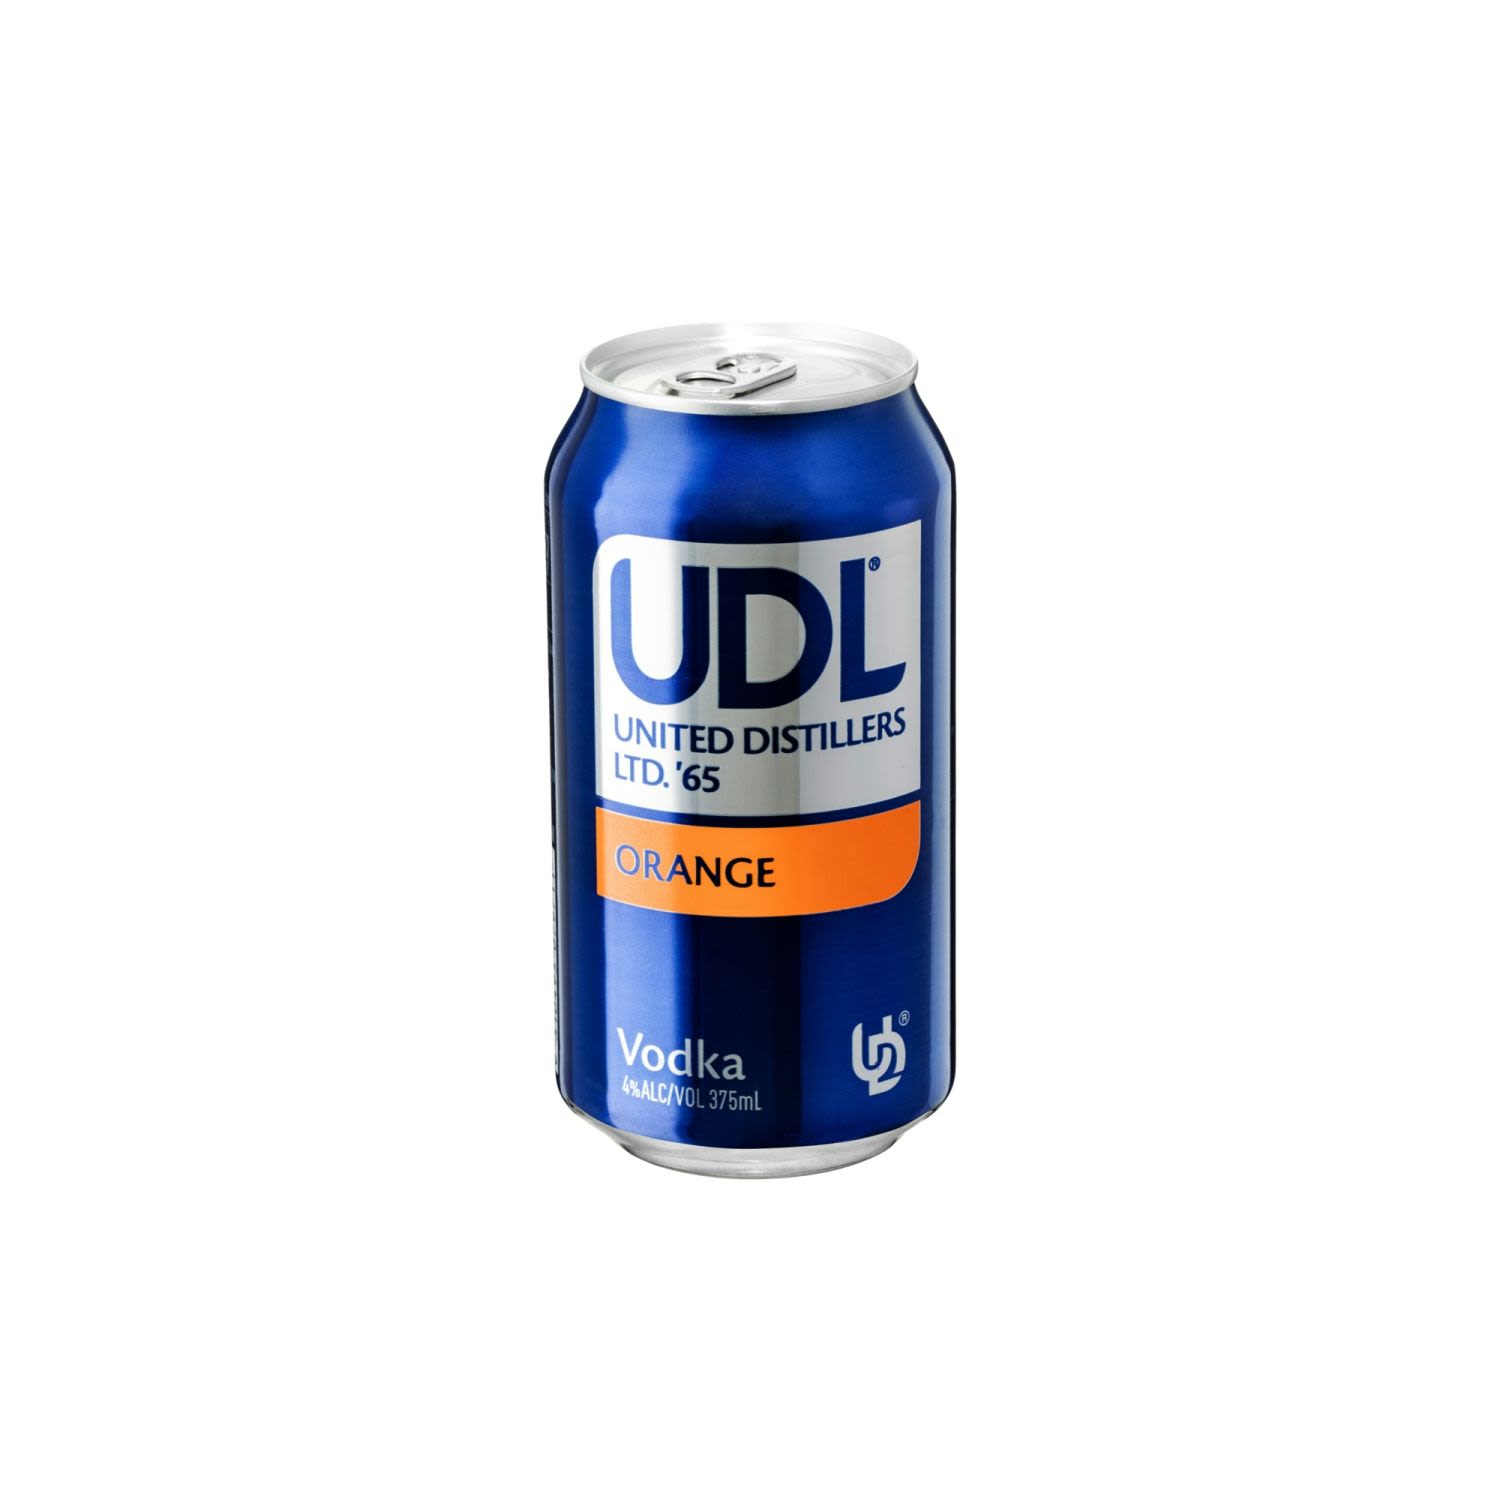 UDL Vodka & Orange Can 375mL